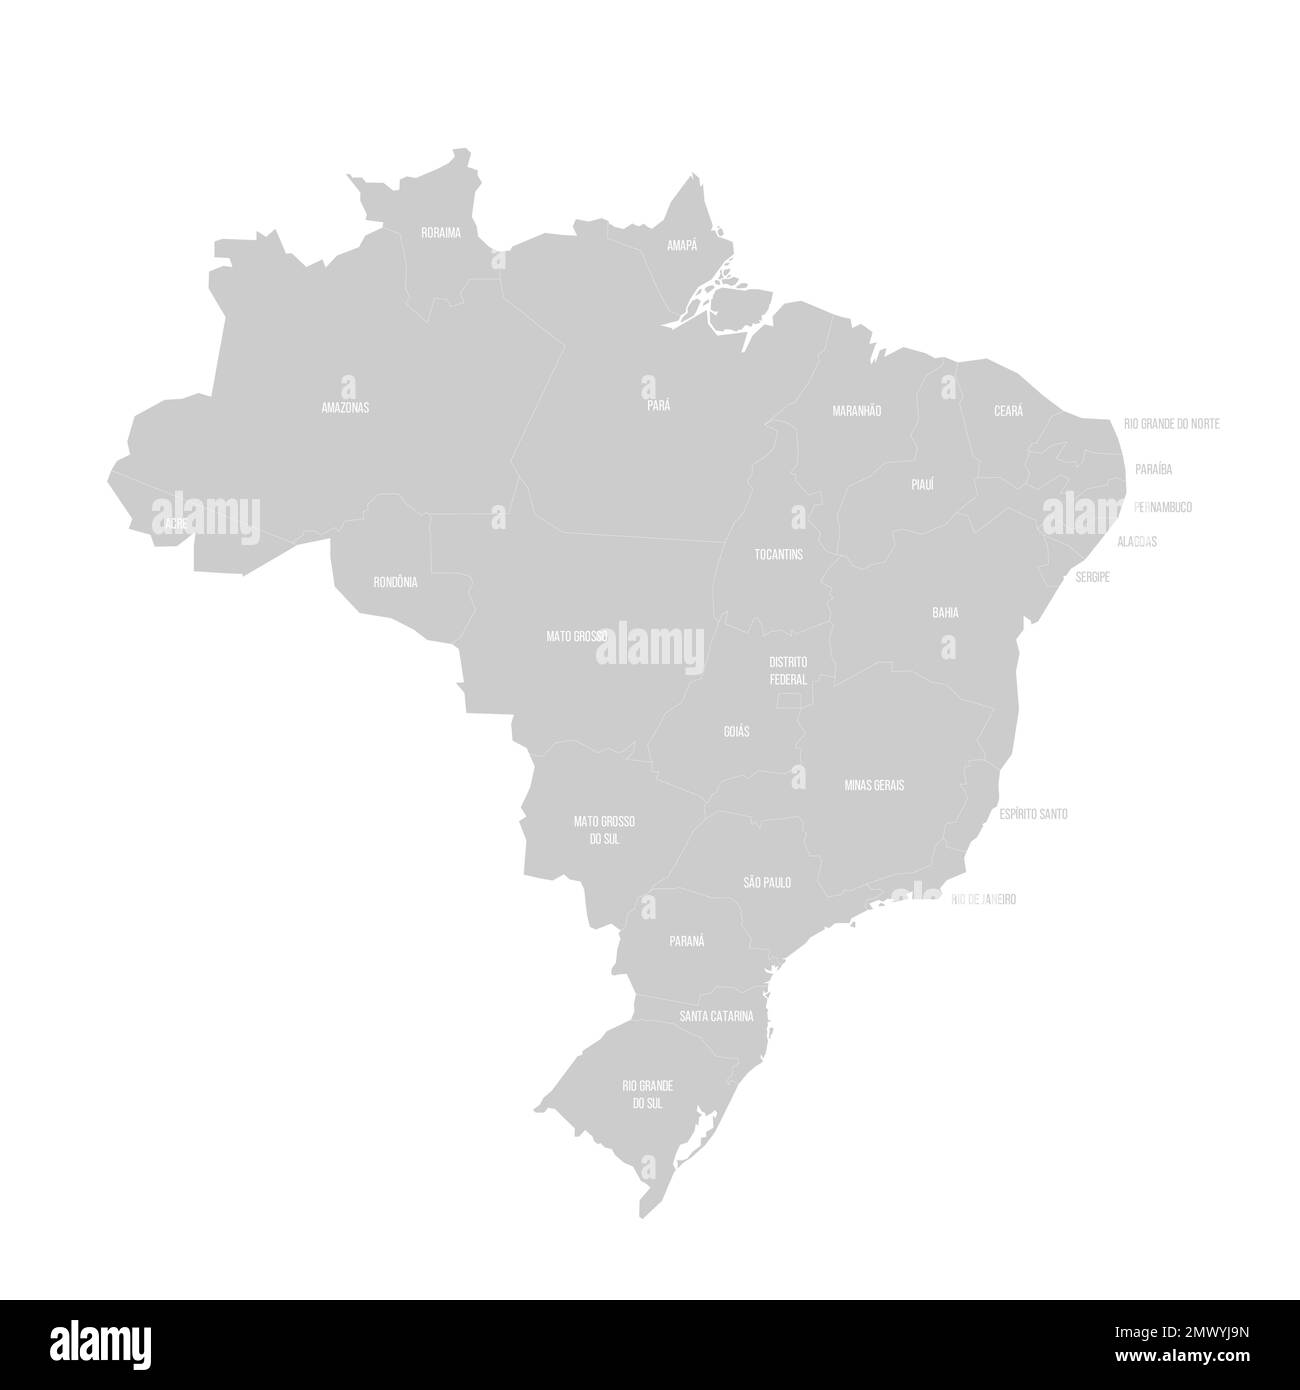 Politische Karte Brasiliens der Verwaltungsabteilungen - Föderative Einheiten Brasiliens. Durchgezogene helle Grauskala mit weißen Linien und Beschriftungen. Stock Vektor